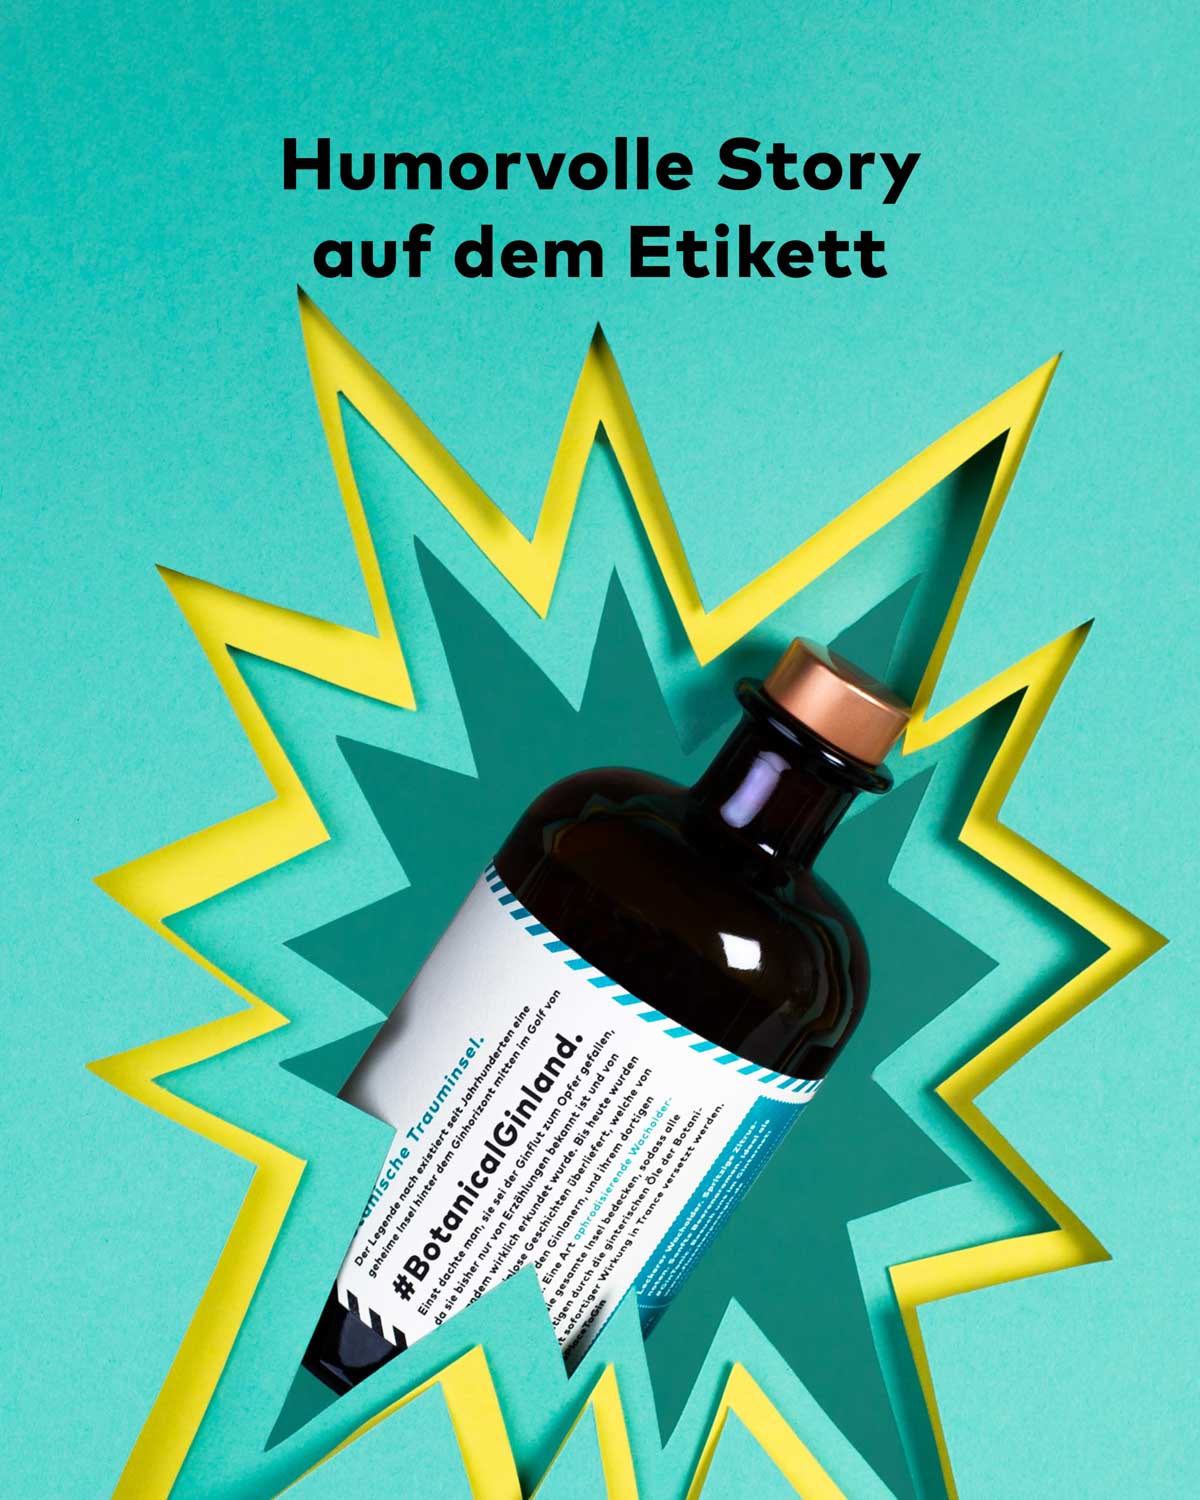 Der humorvolle Flaschenpost Gin mit dem Spruch "Gib deinem Leben einen Gin" und der humorvollen Story auf der Rückseite des Etiketts, eignet sich ideal als Geschenk.